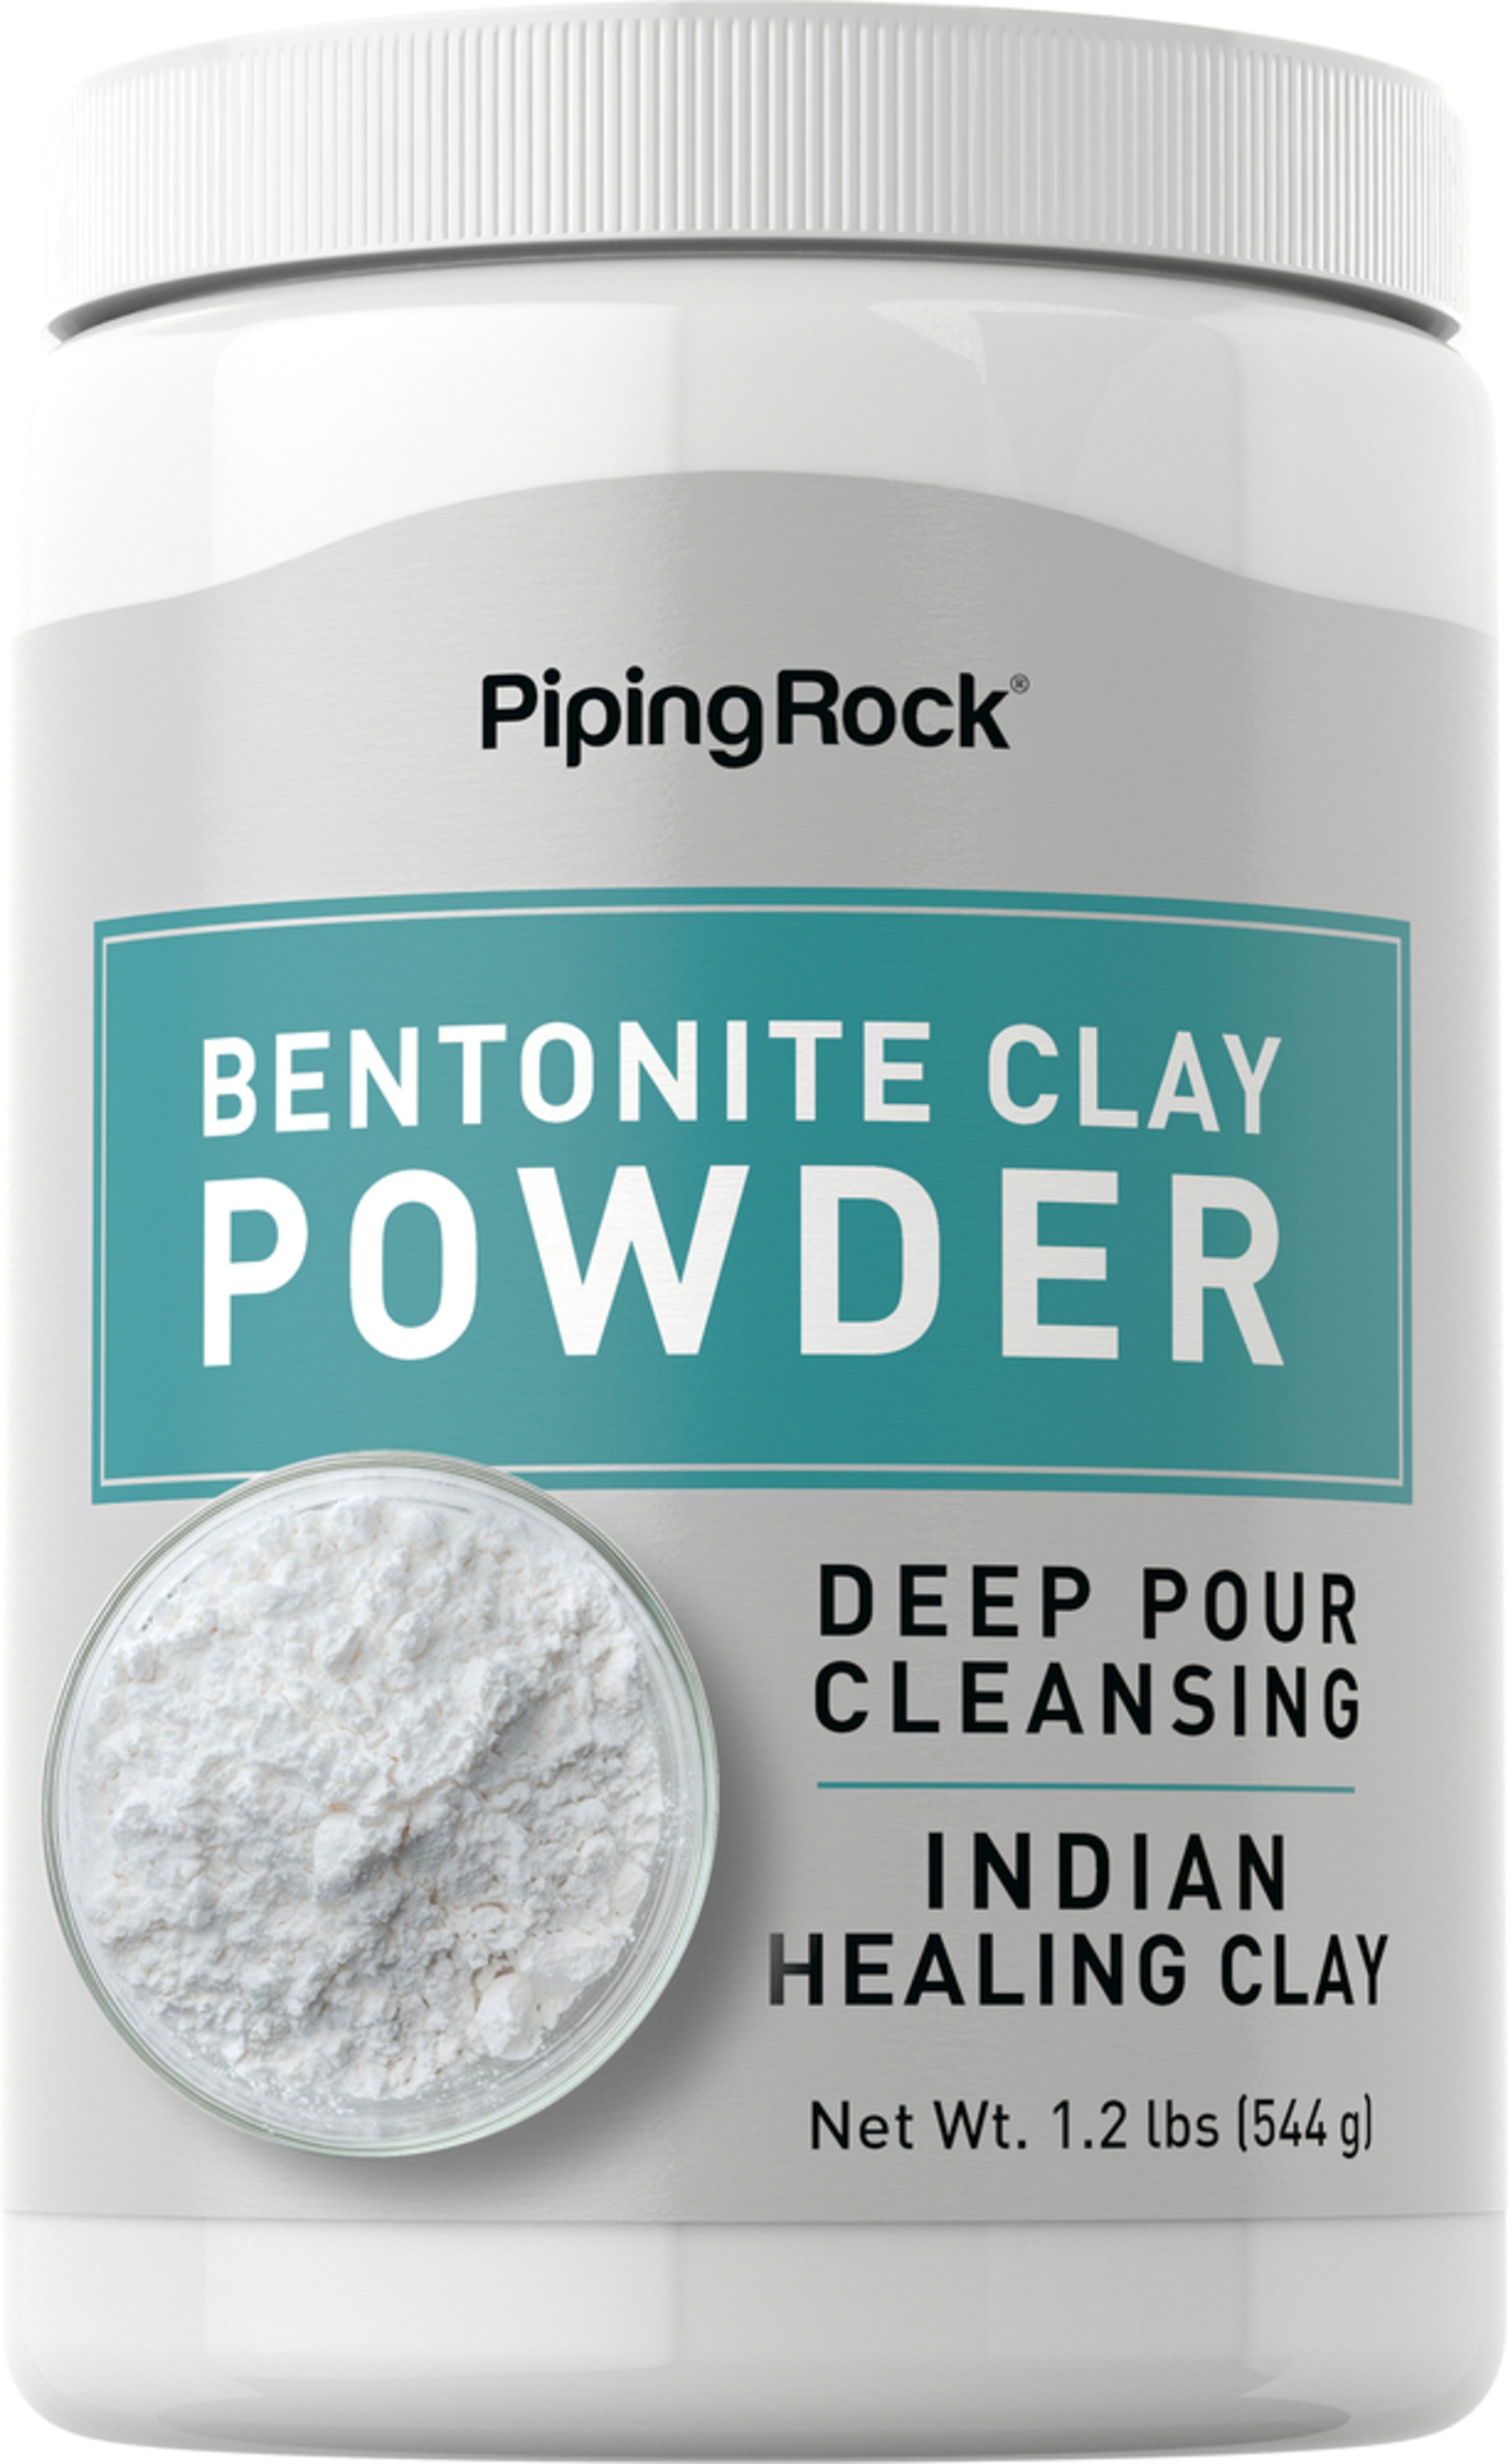 Bentonite clay